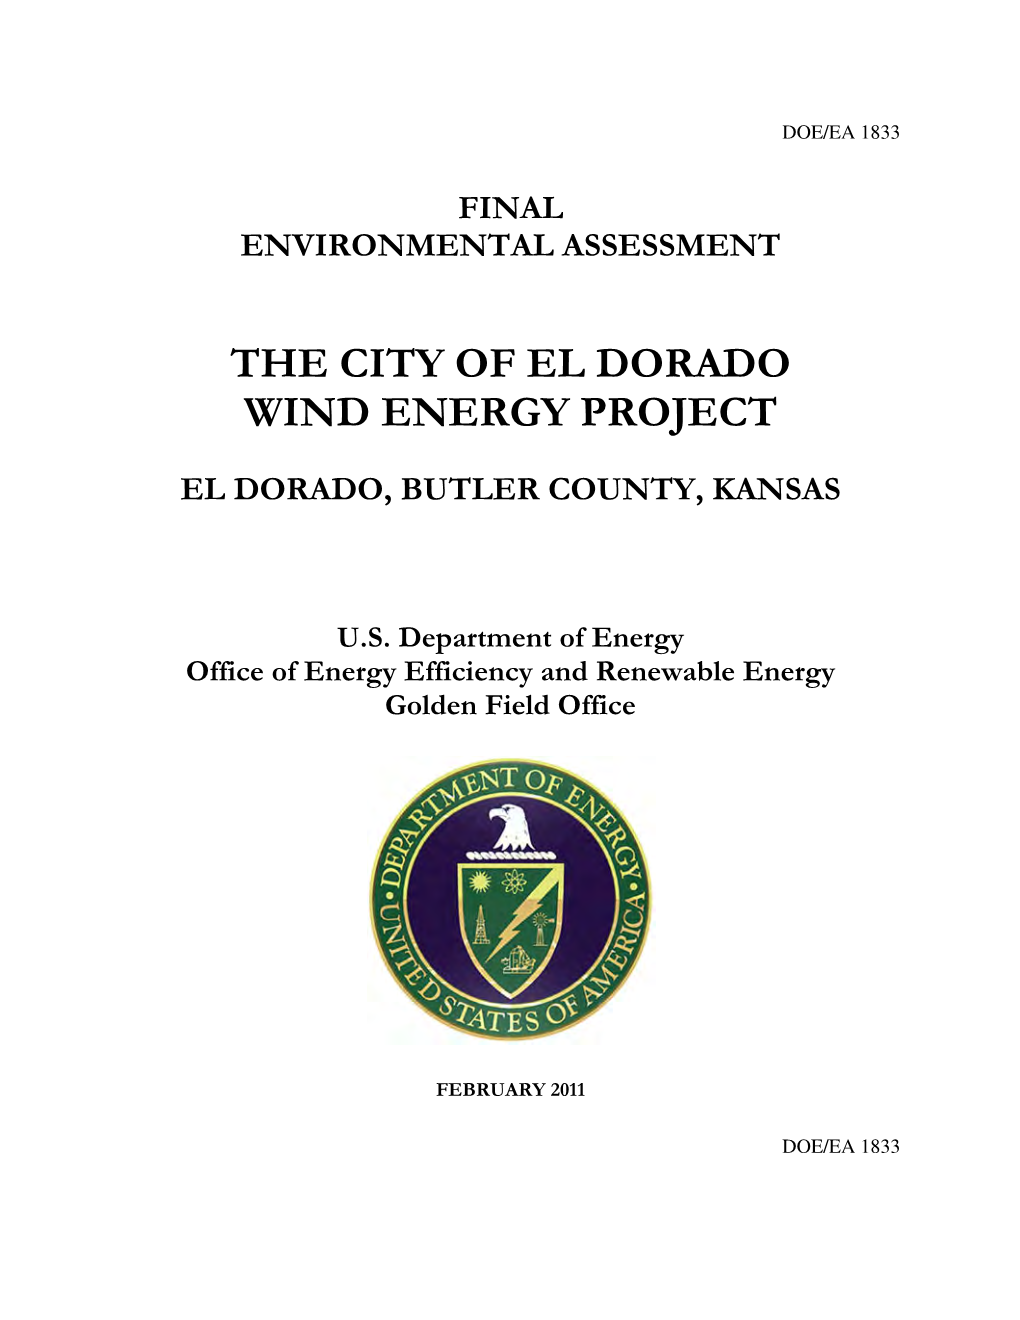 The City of El Dorado Wind Energy Project